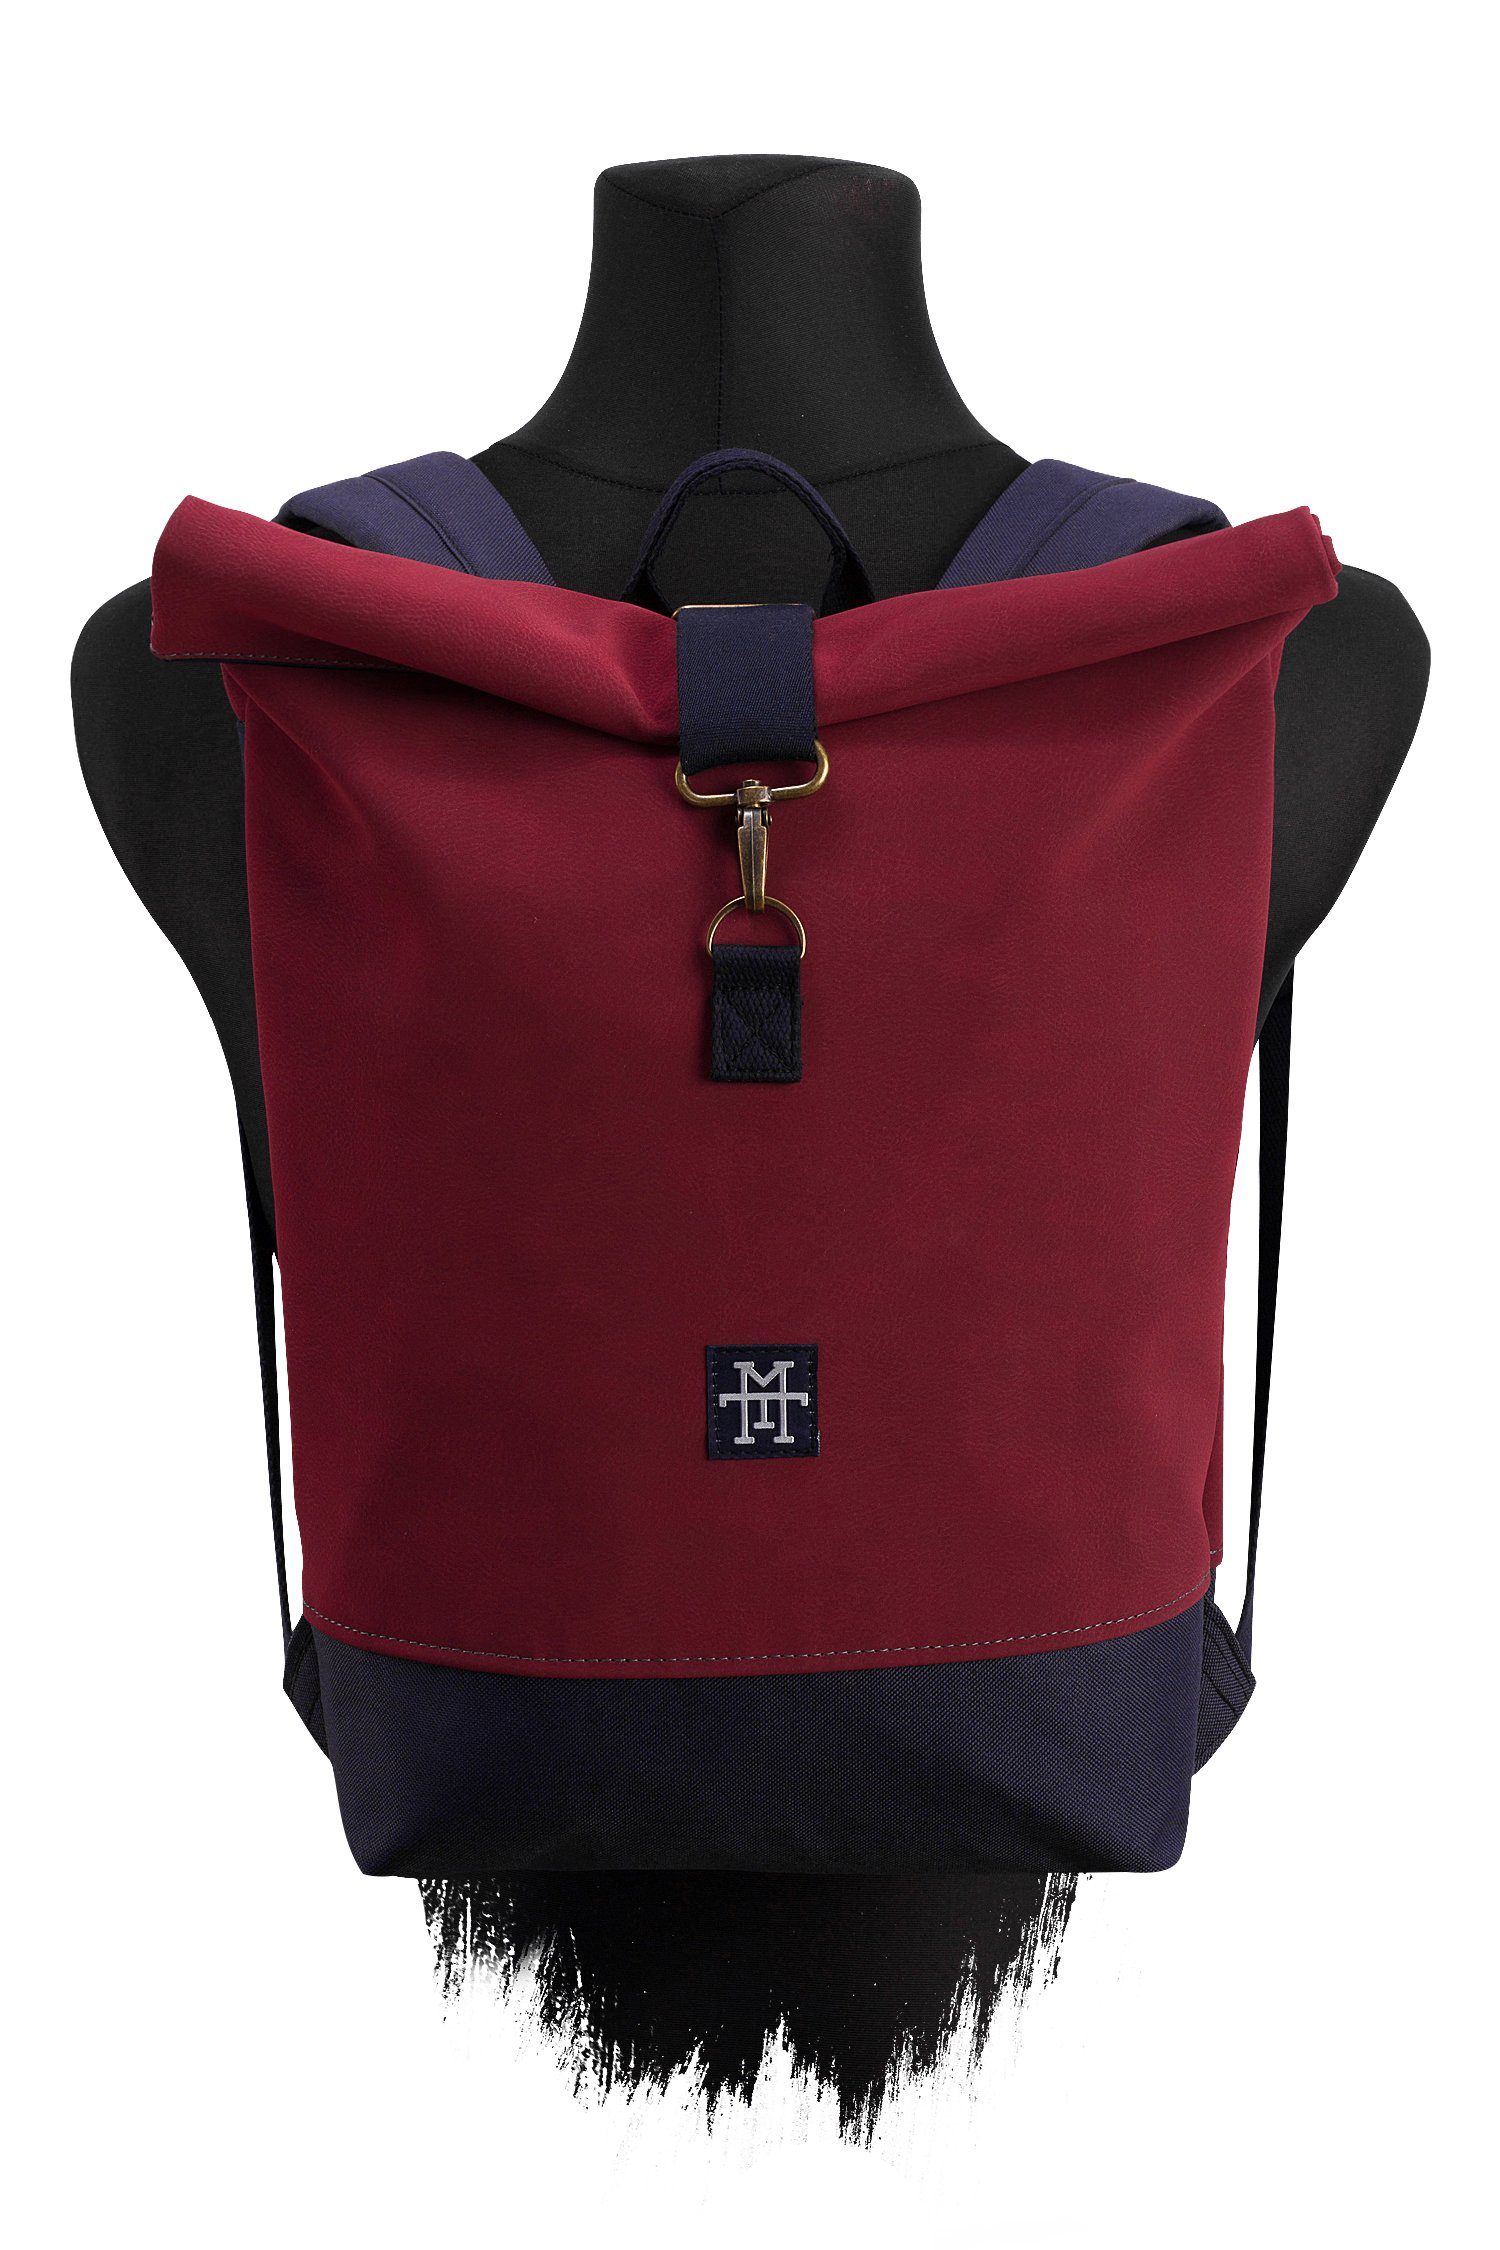 Gurte Manufaktur13 - wasserdicht/wasserabweisend, Bordeaux Mini Rollverschluss, Roll-Top verstellbare Rucksack mit Tagesrucksack Backpack